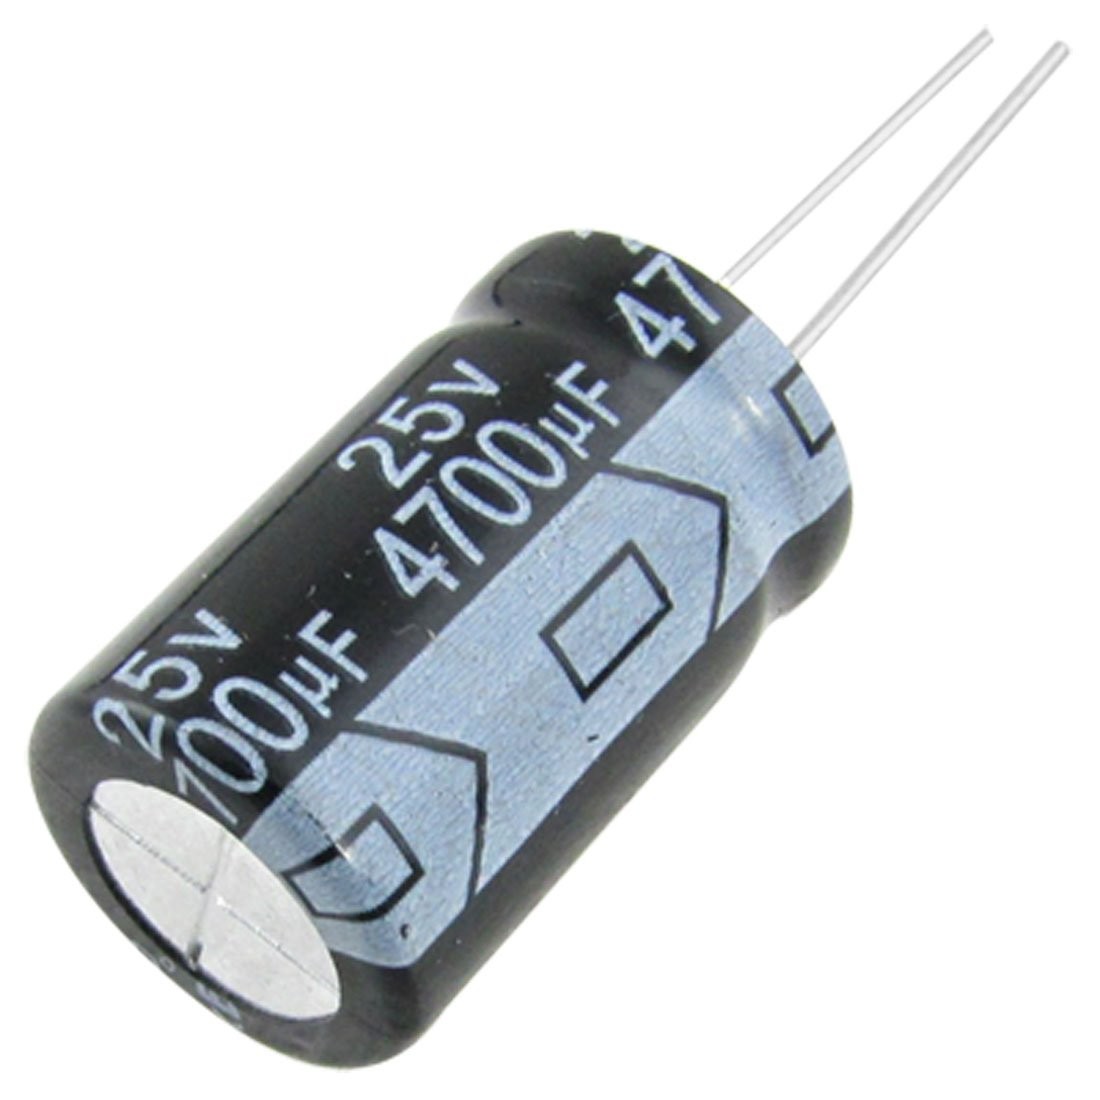 Condensador electrolitico 4700uF 25V | Leantec.ES